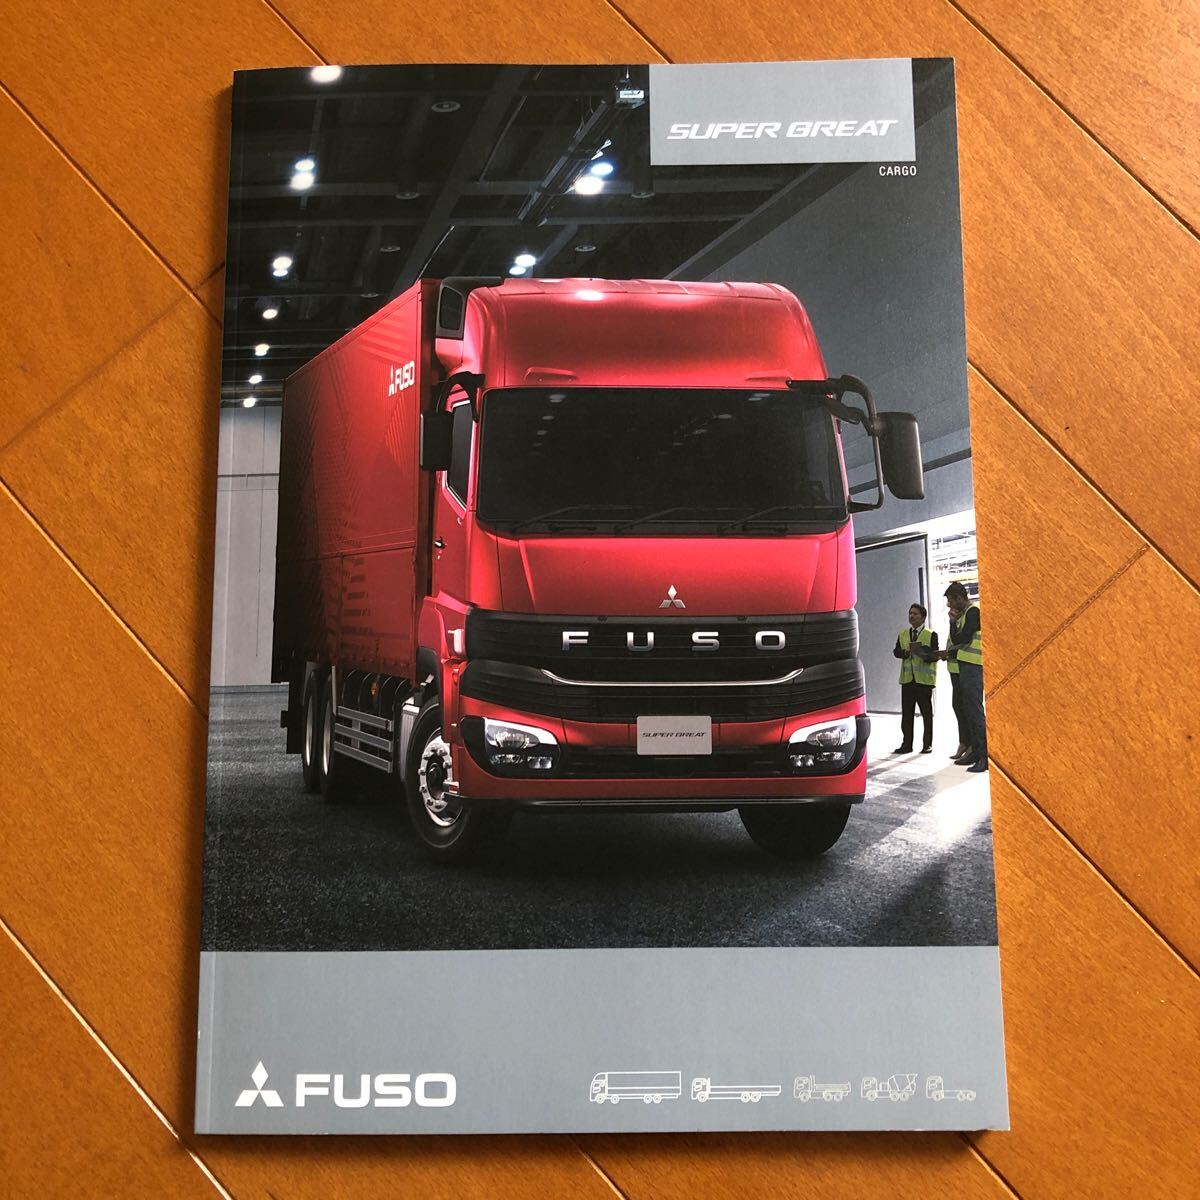  новая модель Mitsubishi Super Great cargo каталог 77.